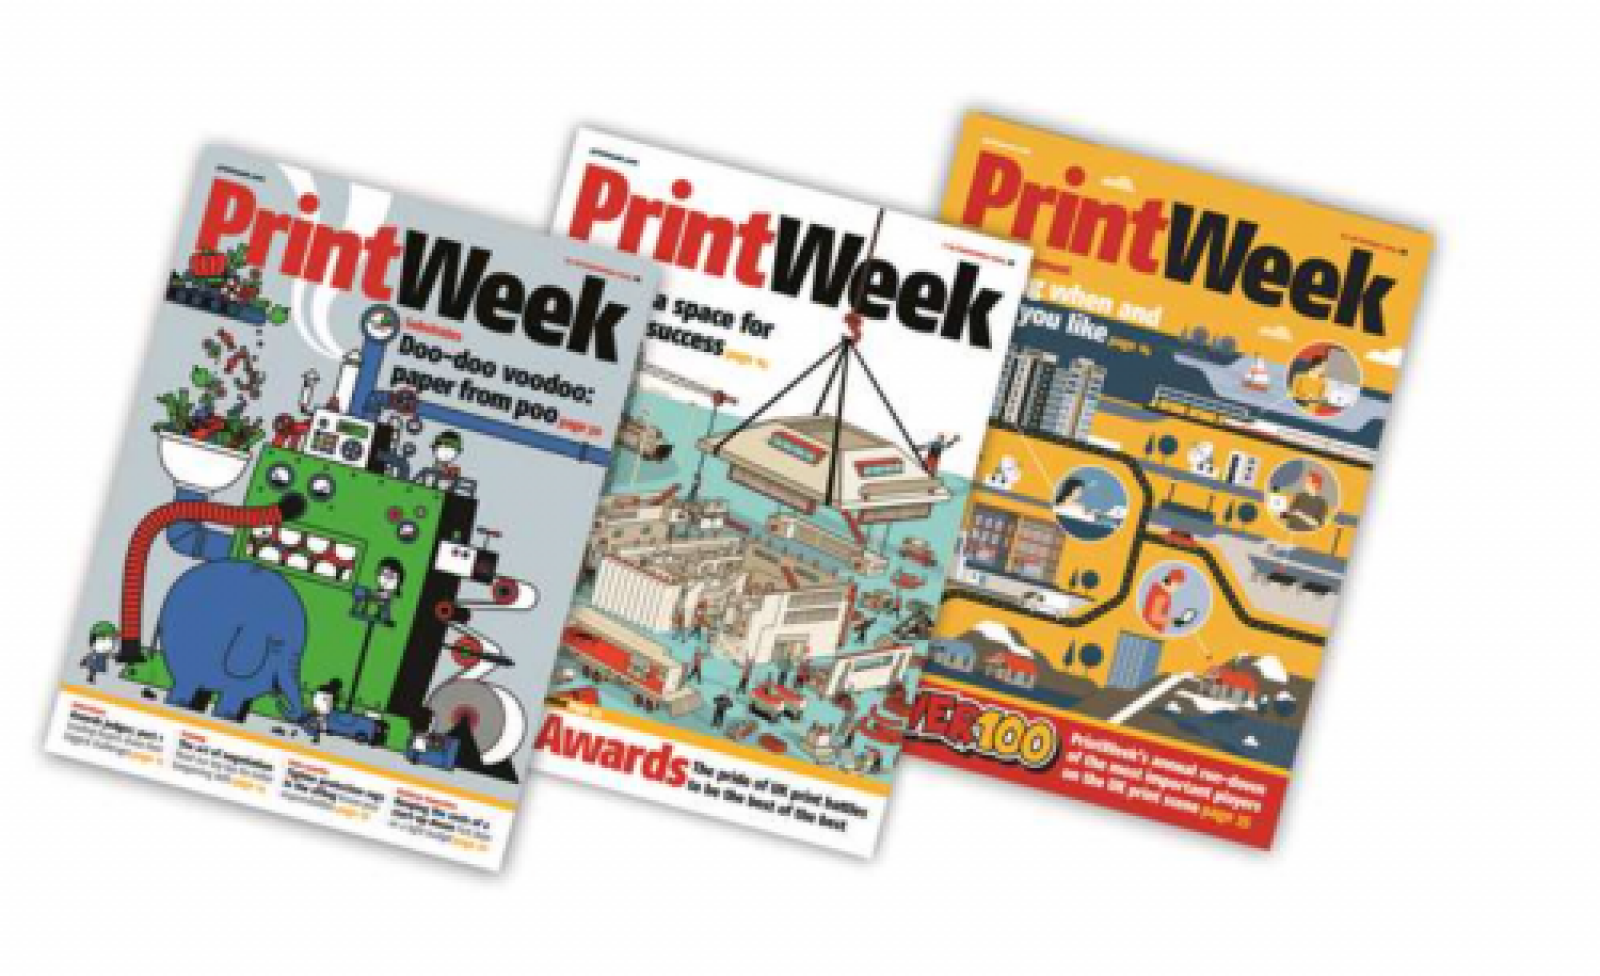 Print Week